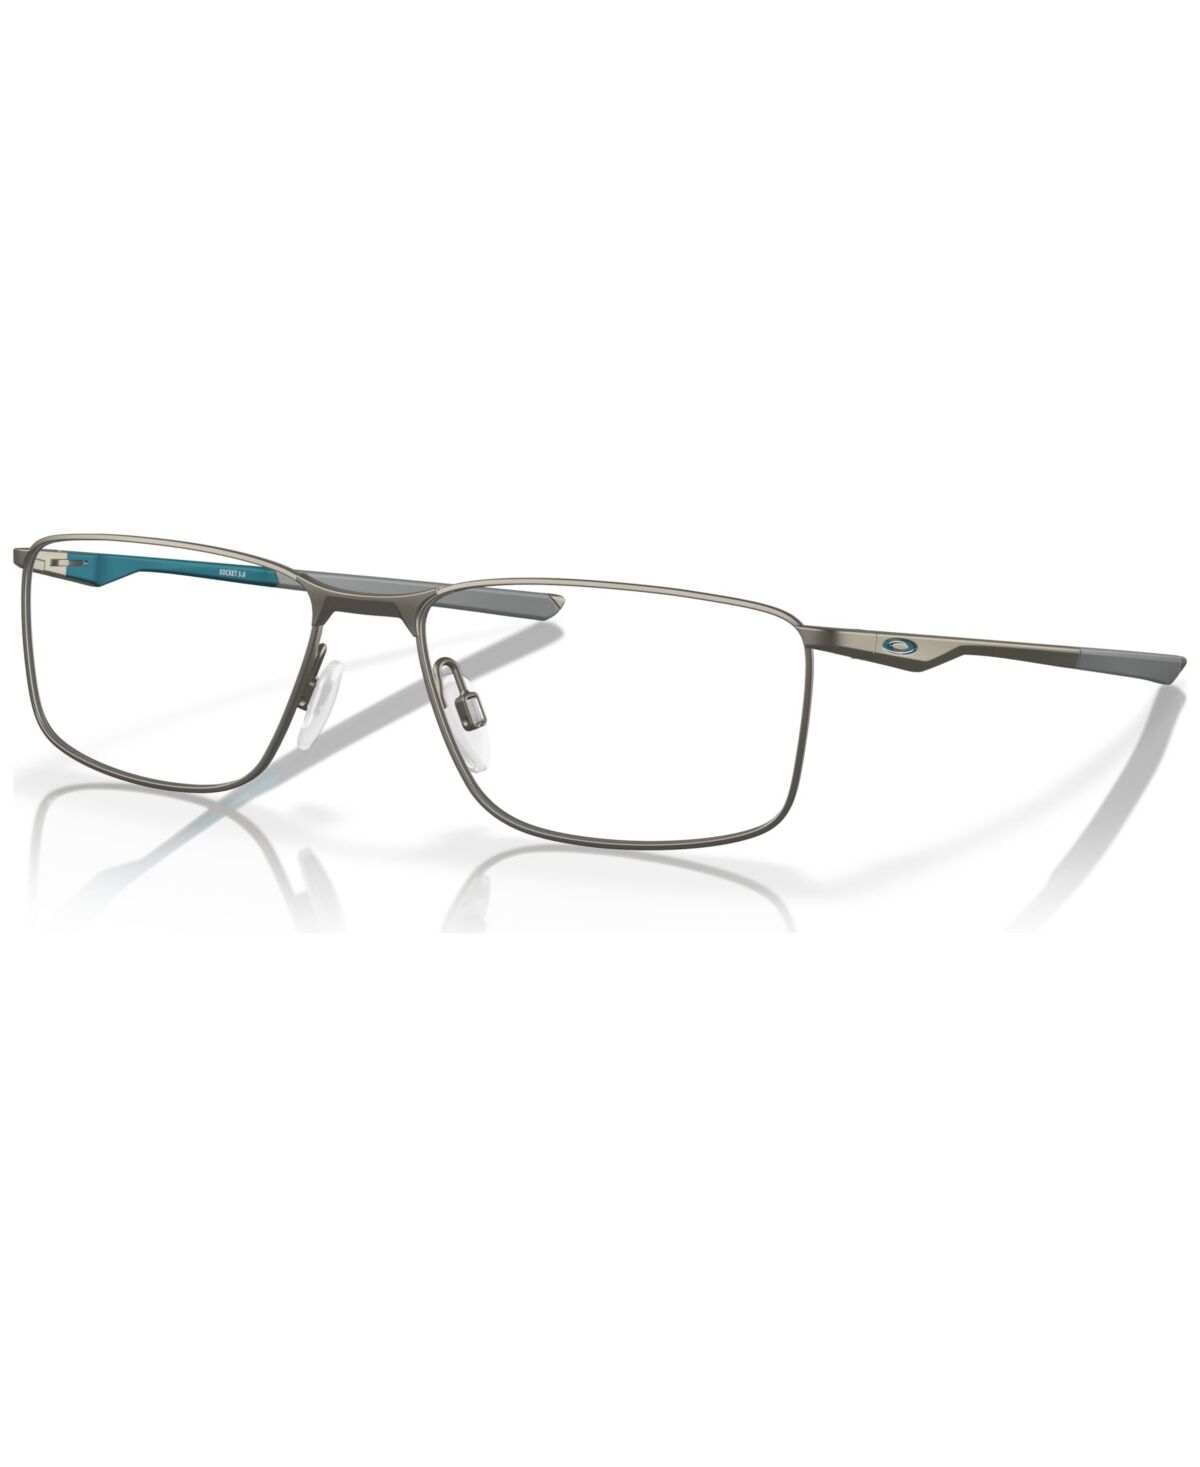 Oakley Men's Socket 5.0 Eyeglasses, OX3217 - Matte Gunmetal